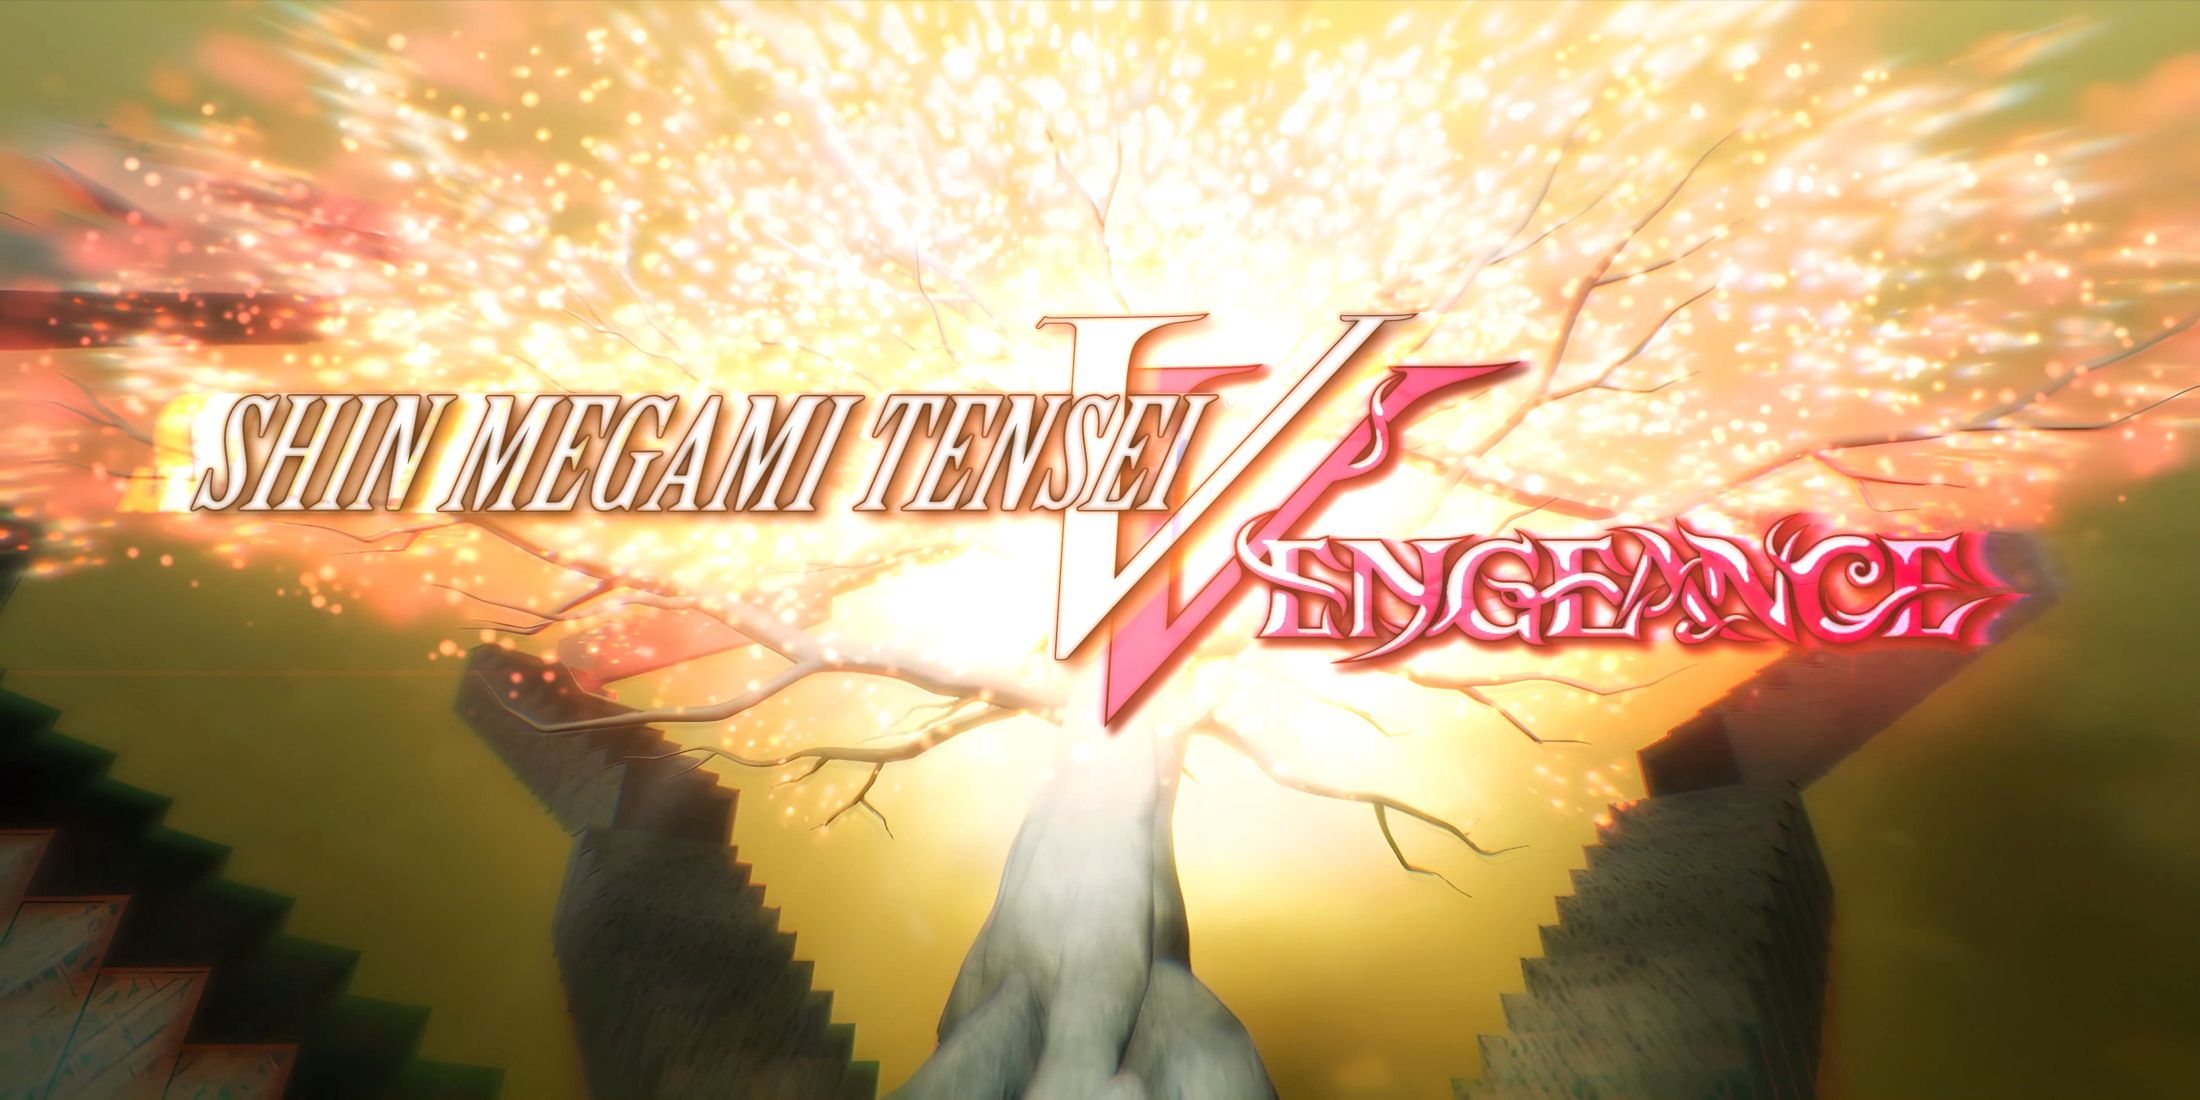 Shin Megami Tensei V: Vengeance Review